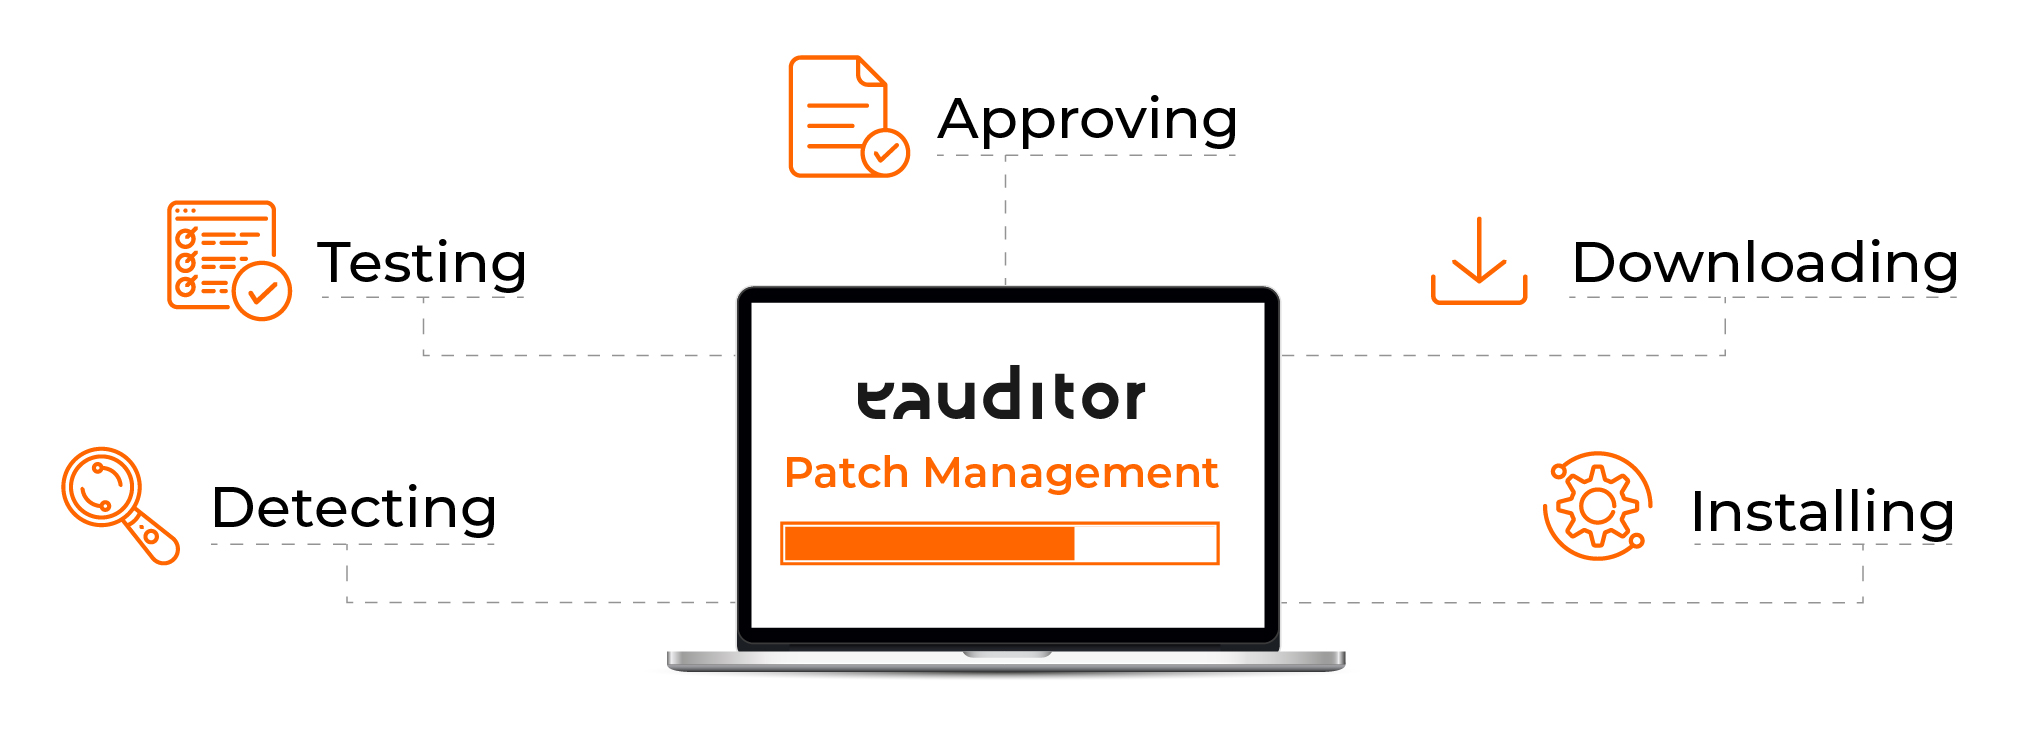 patch_management_EN